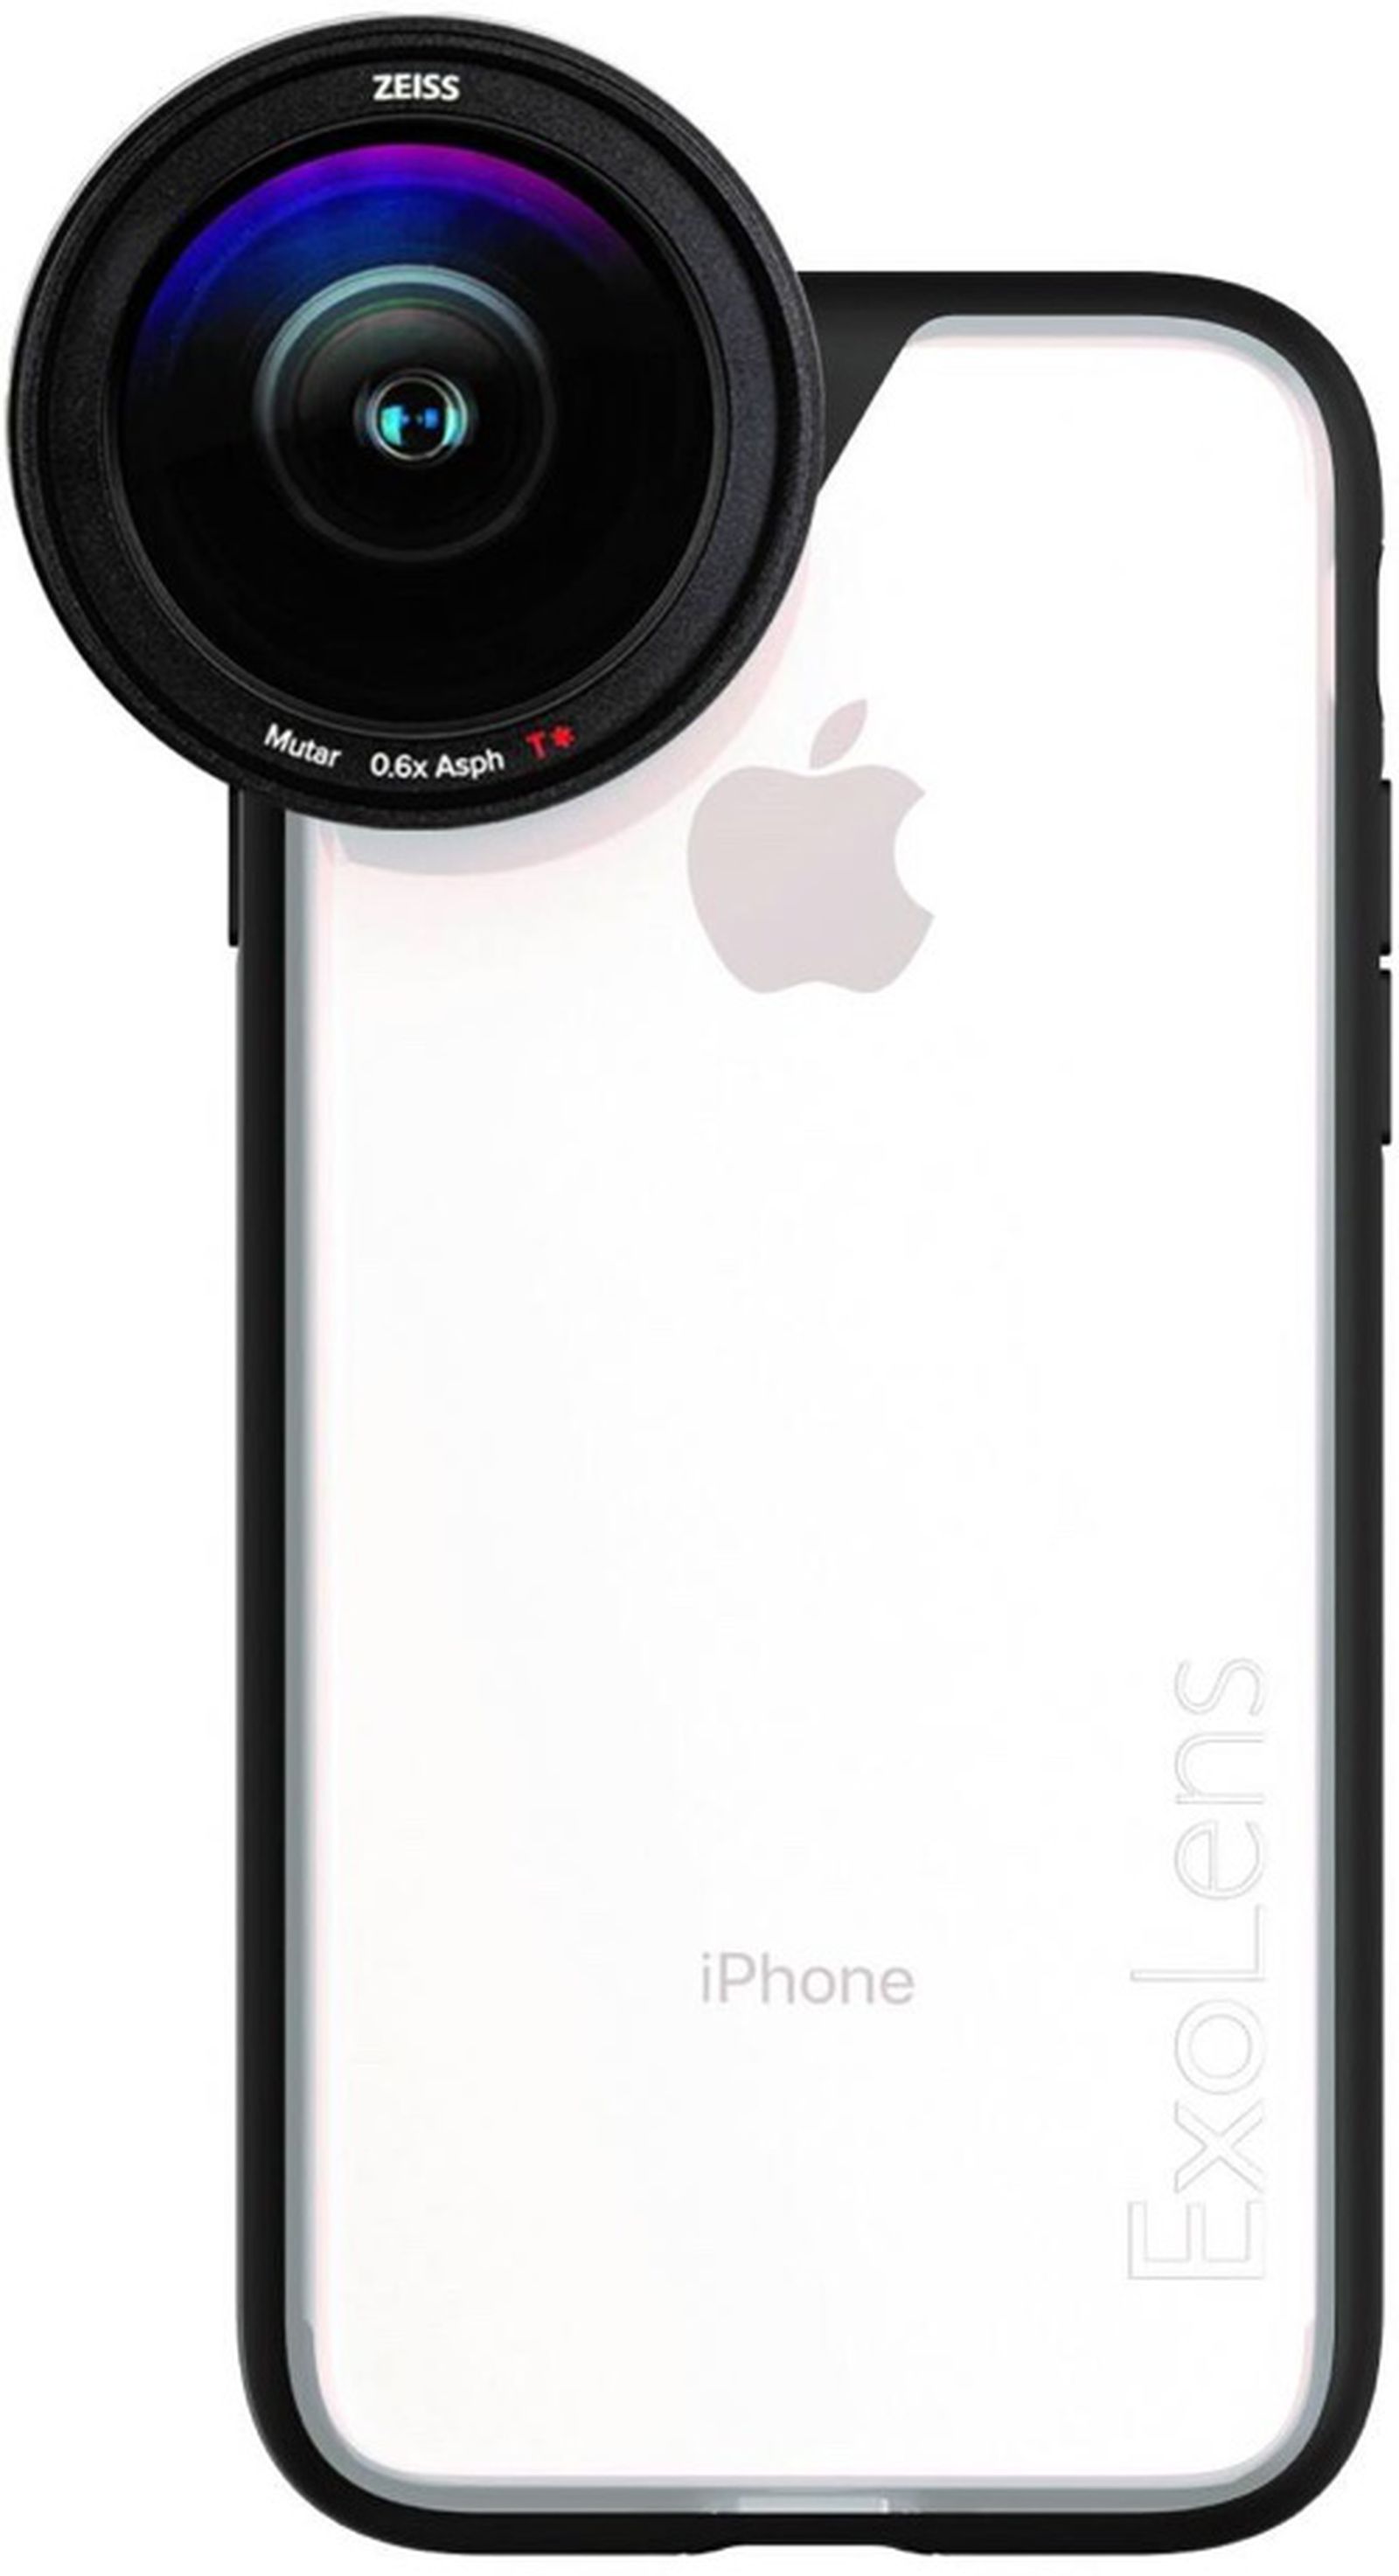 CES 2017: ExoLens Announces iPhone 7 Case Compatible With Zeiss Lenses